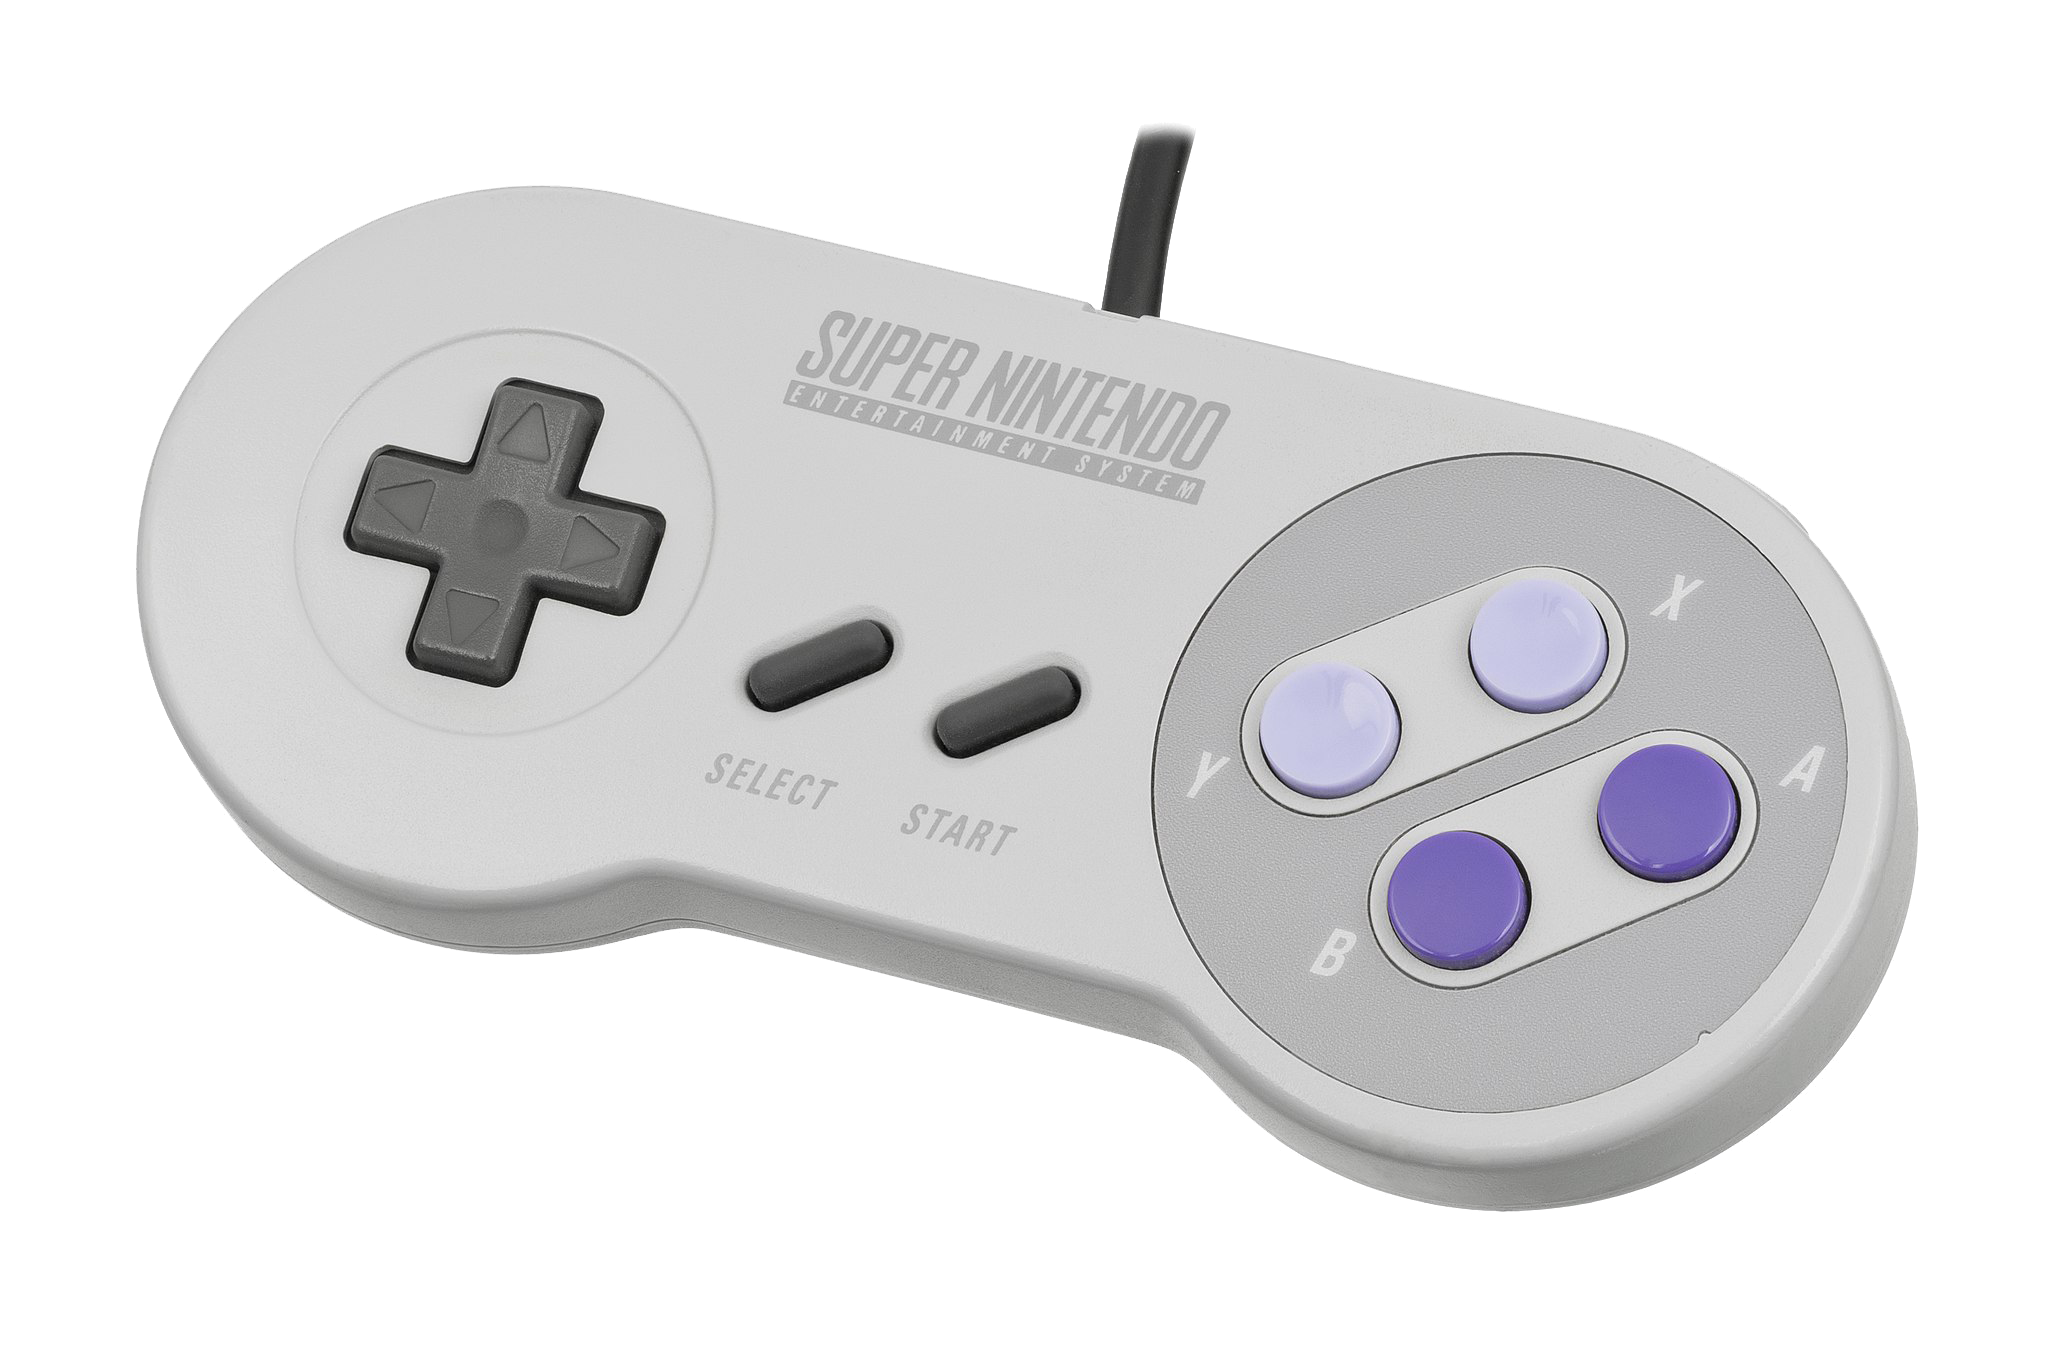 Super Nintendo Entertainment System controller, Nintendo